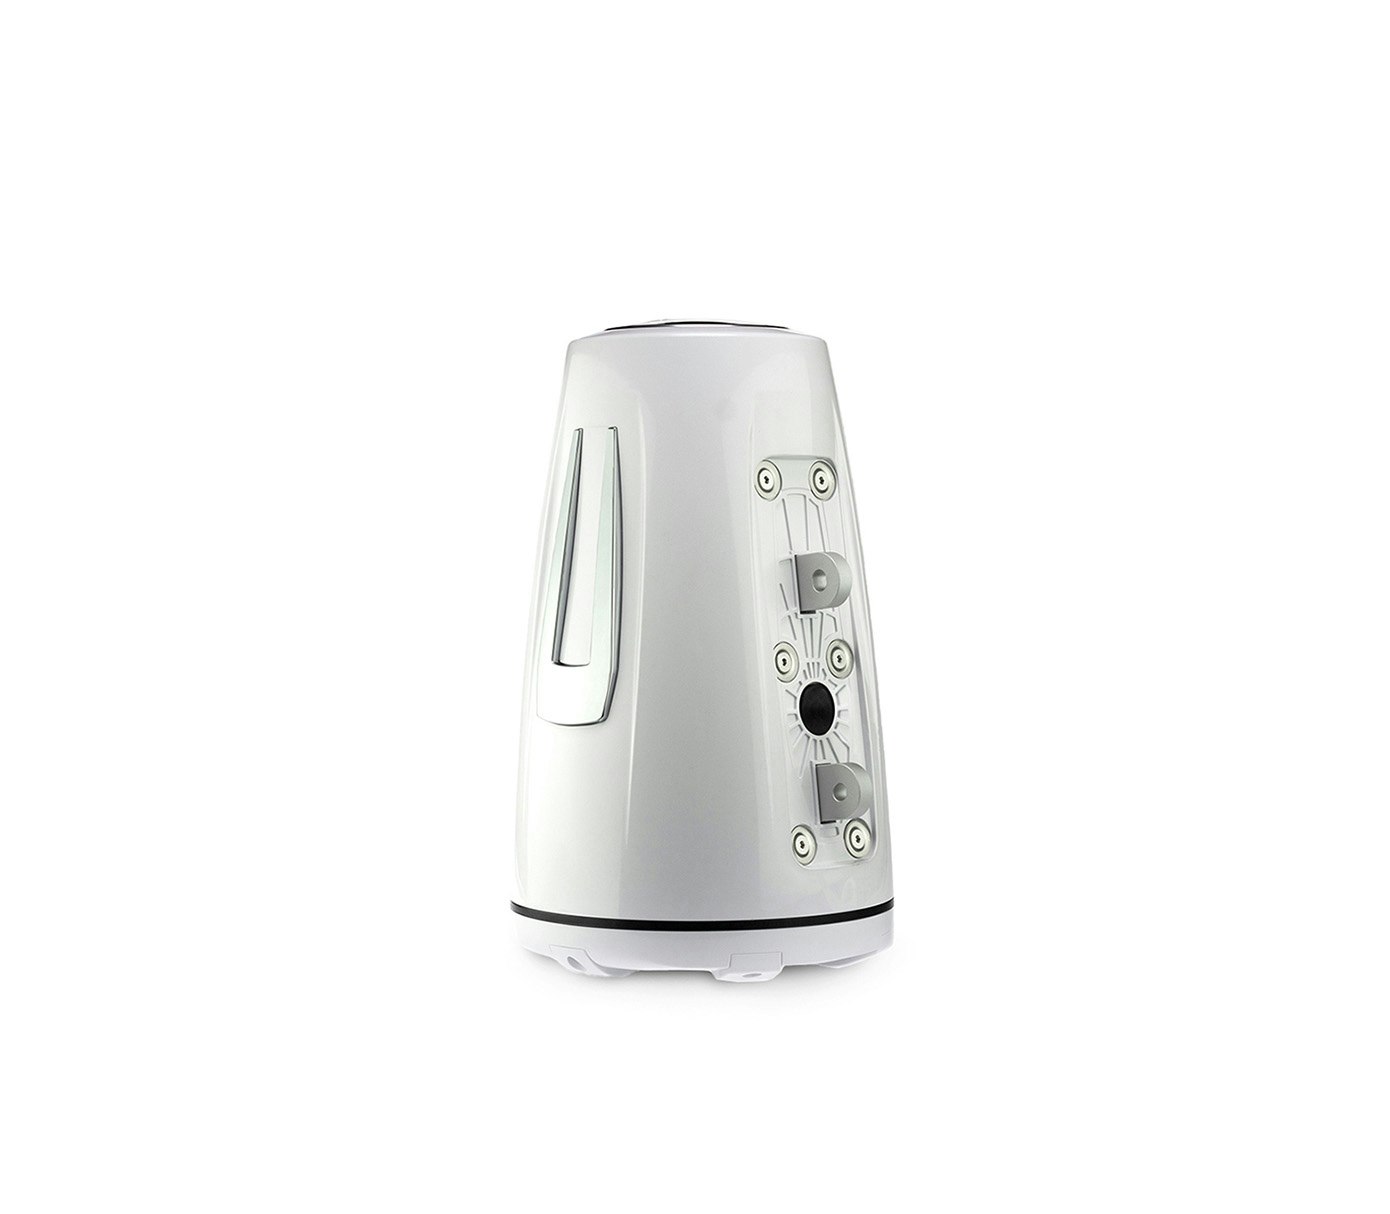  Fusion SG-FLT652SPW - Speaker, SG V3 Tower 6.5 inch, white